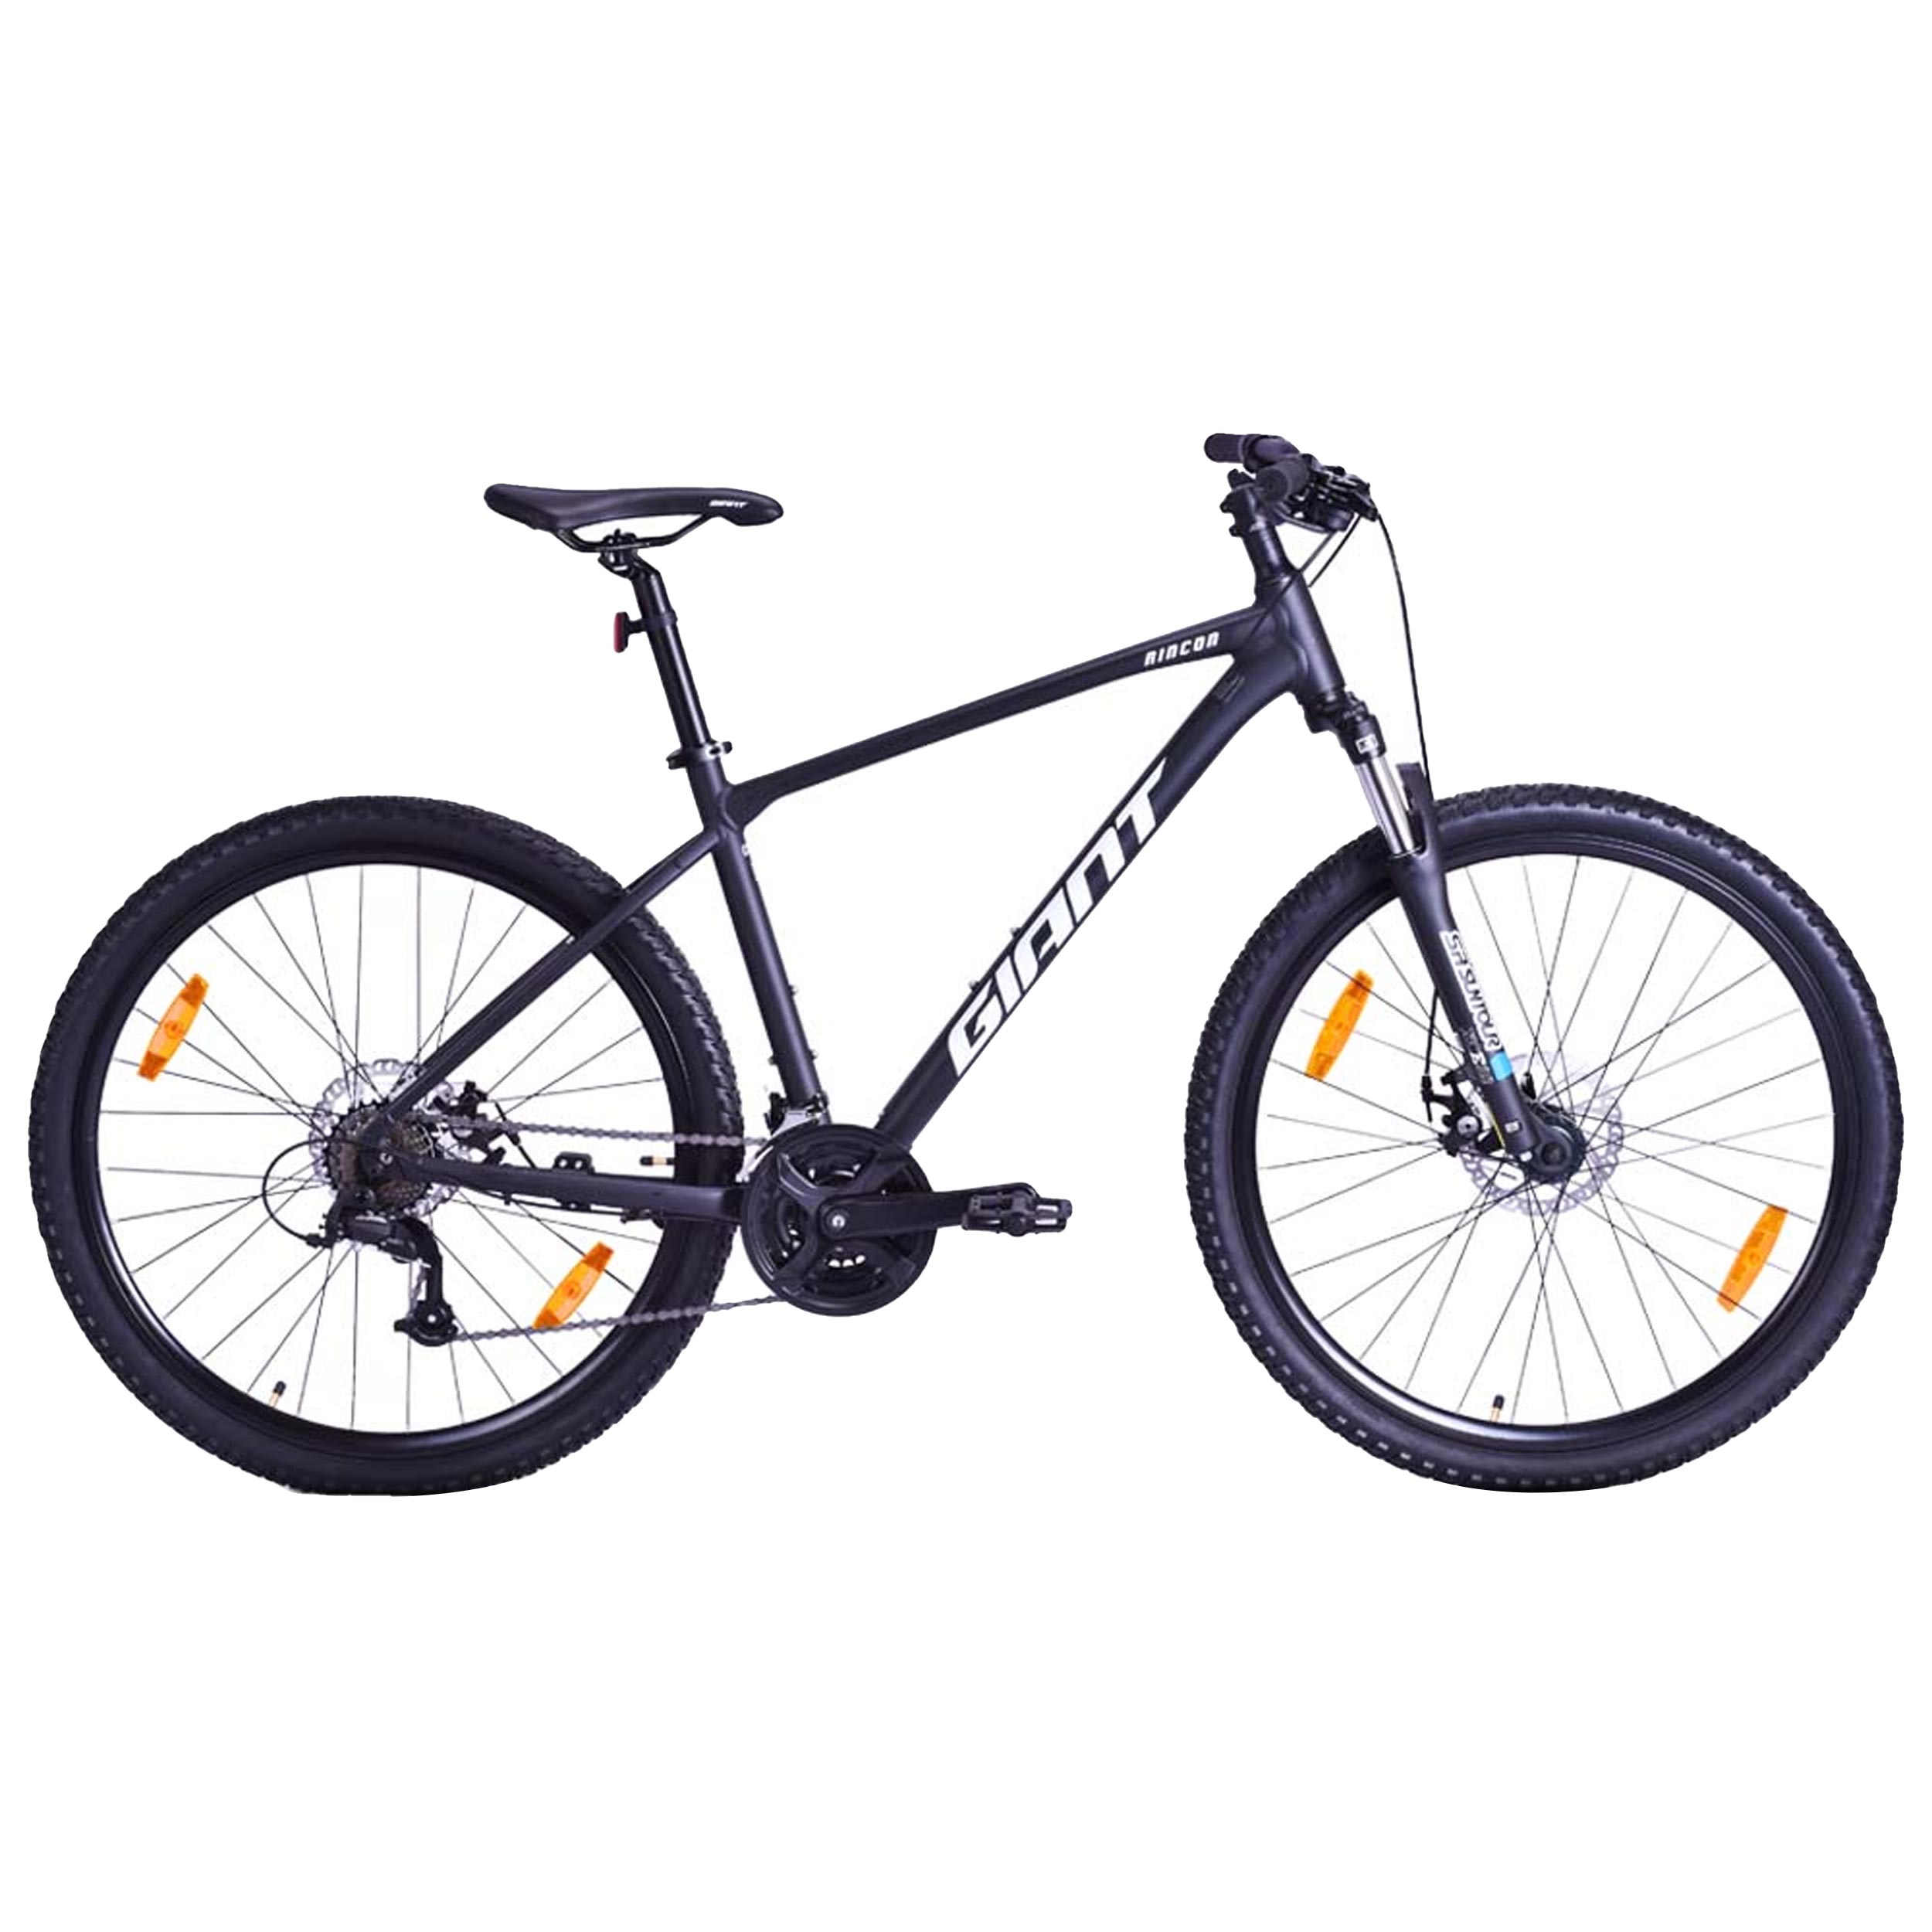 نکته خرید - قیمت روز دوچرخه کوهستان جاینت مدل Rincon 2 سایز 27.5 خرید